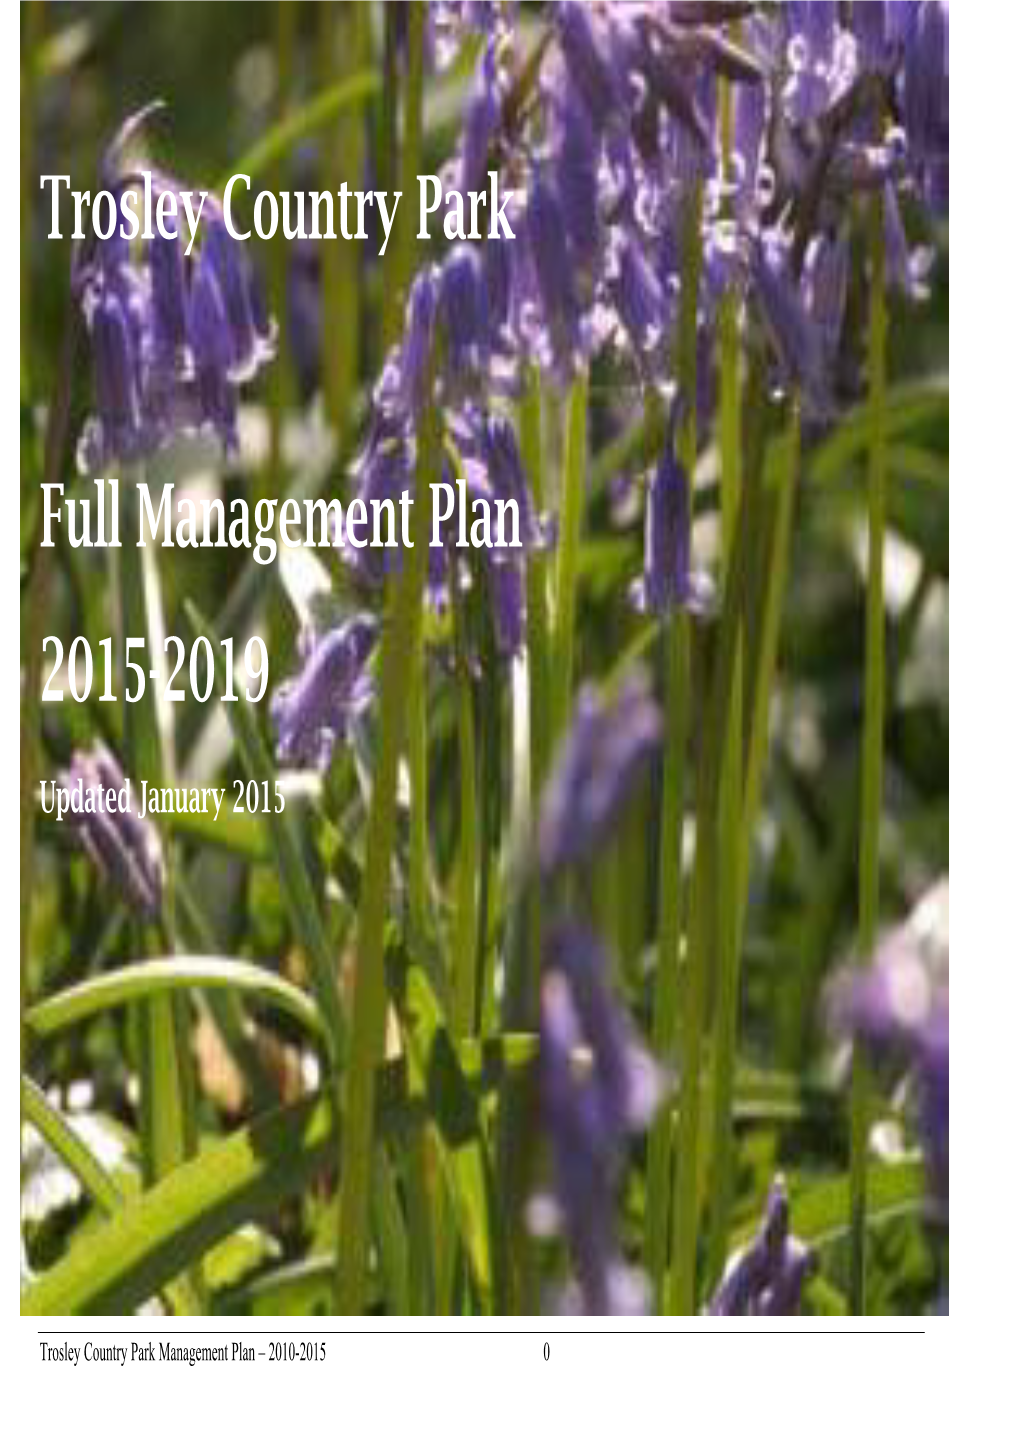 Trosley Country Park Full Management Plan 2015-2019